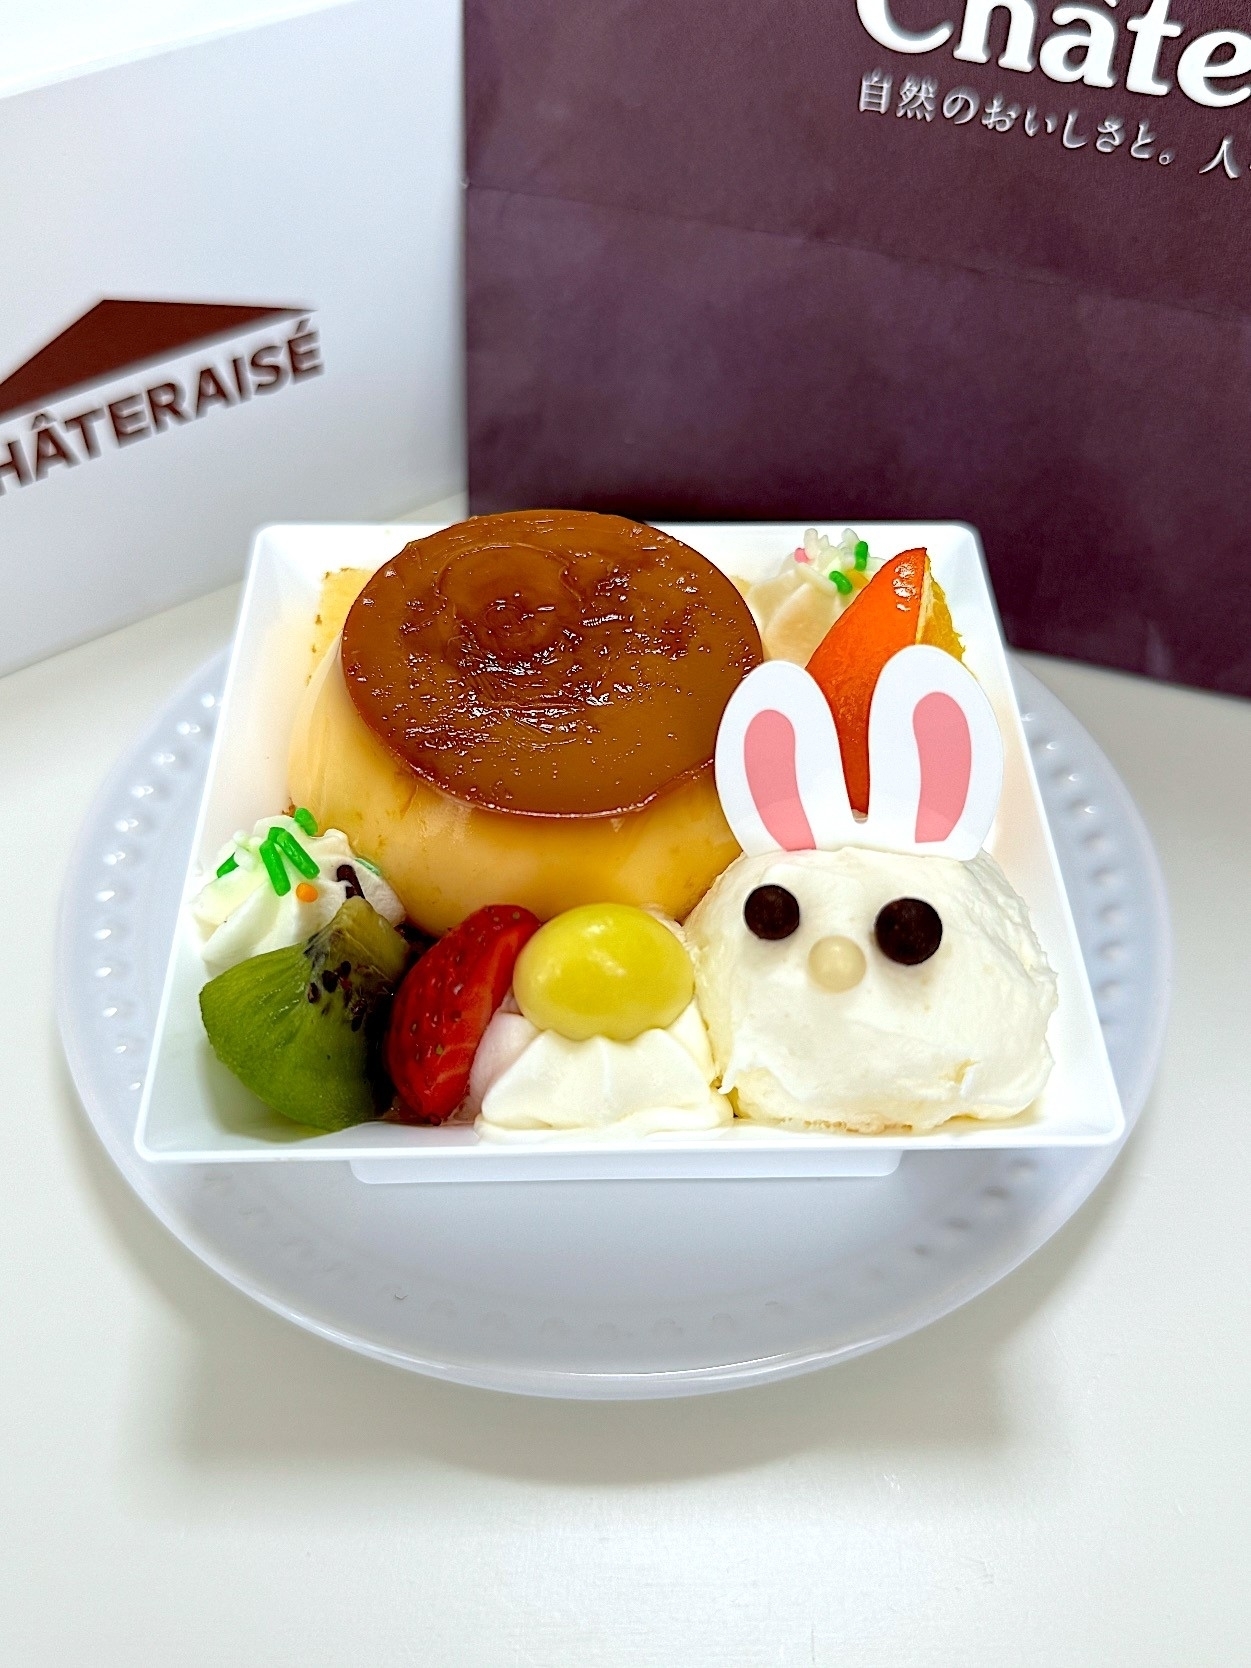 写真はヤマザキ「シャトレーゼ」のプリンとキャラクターの形をしたアイスクリームが盛り付けられたデザートです。